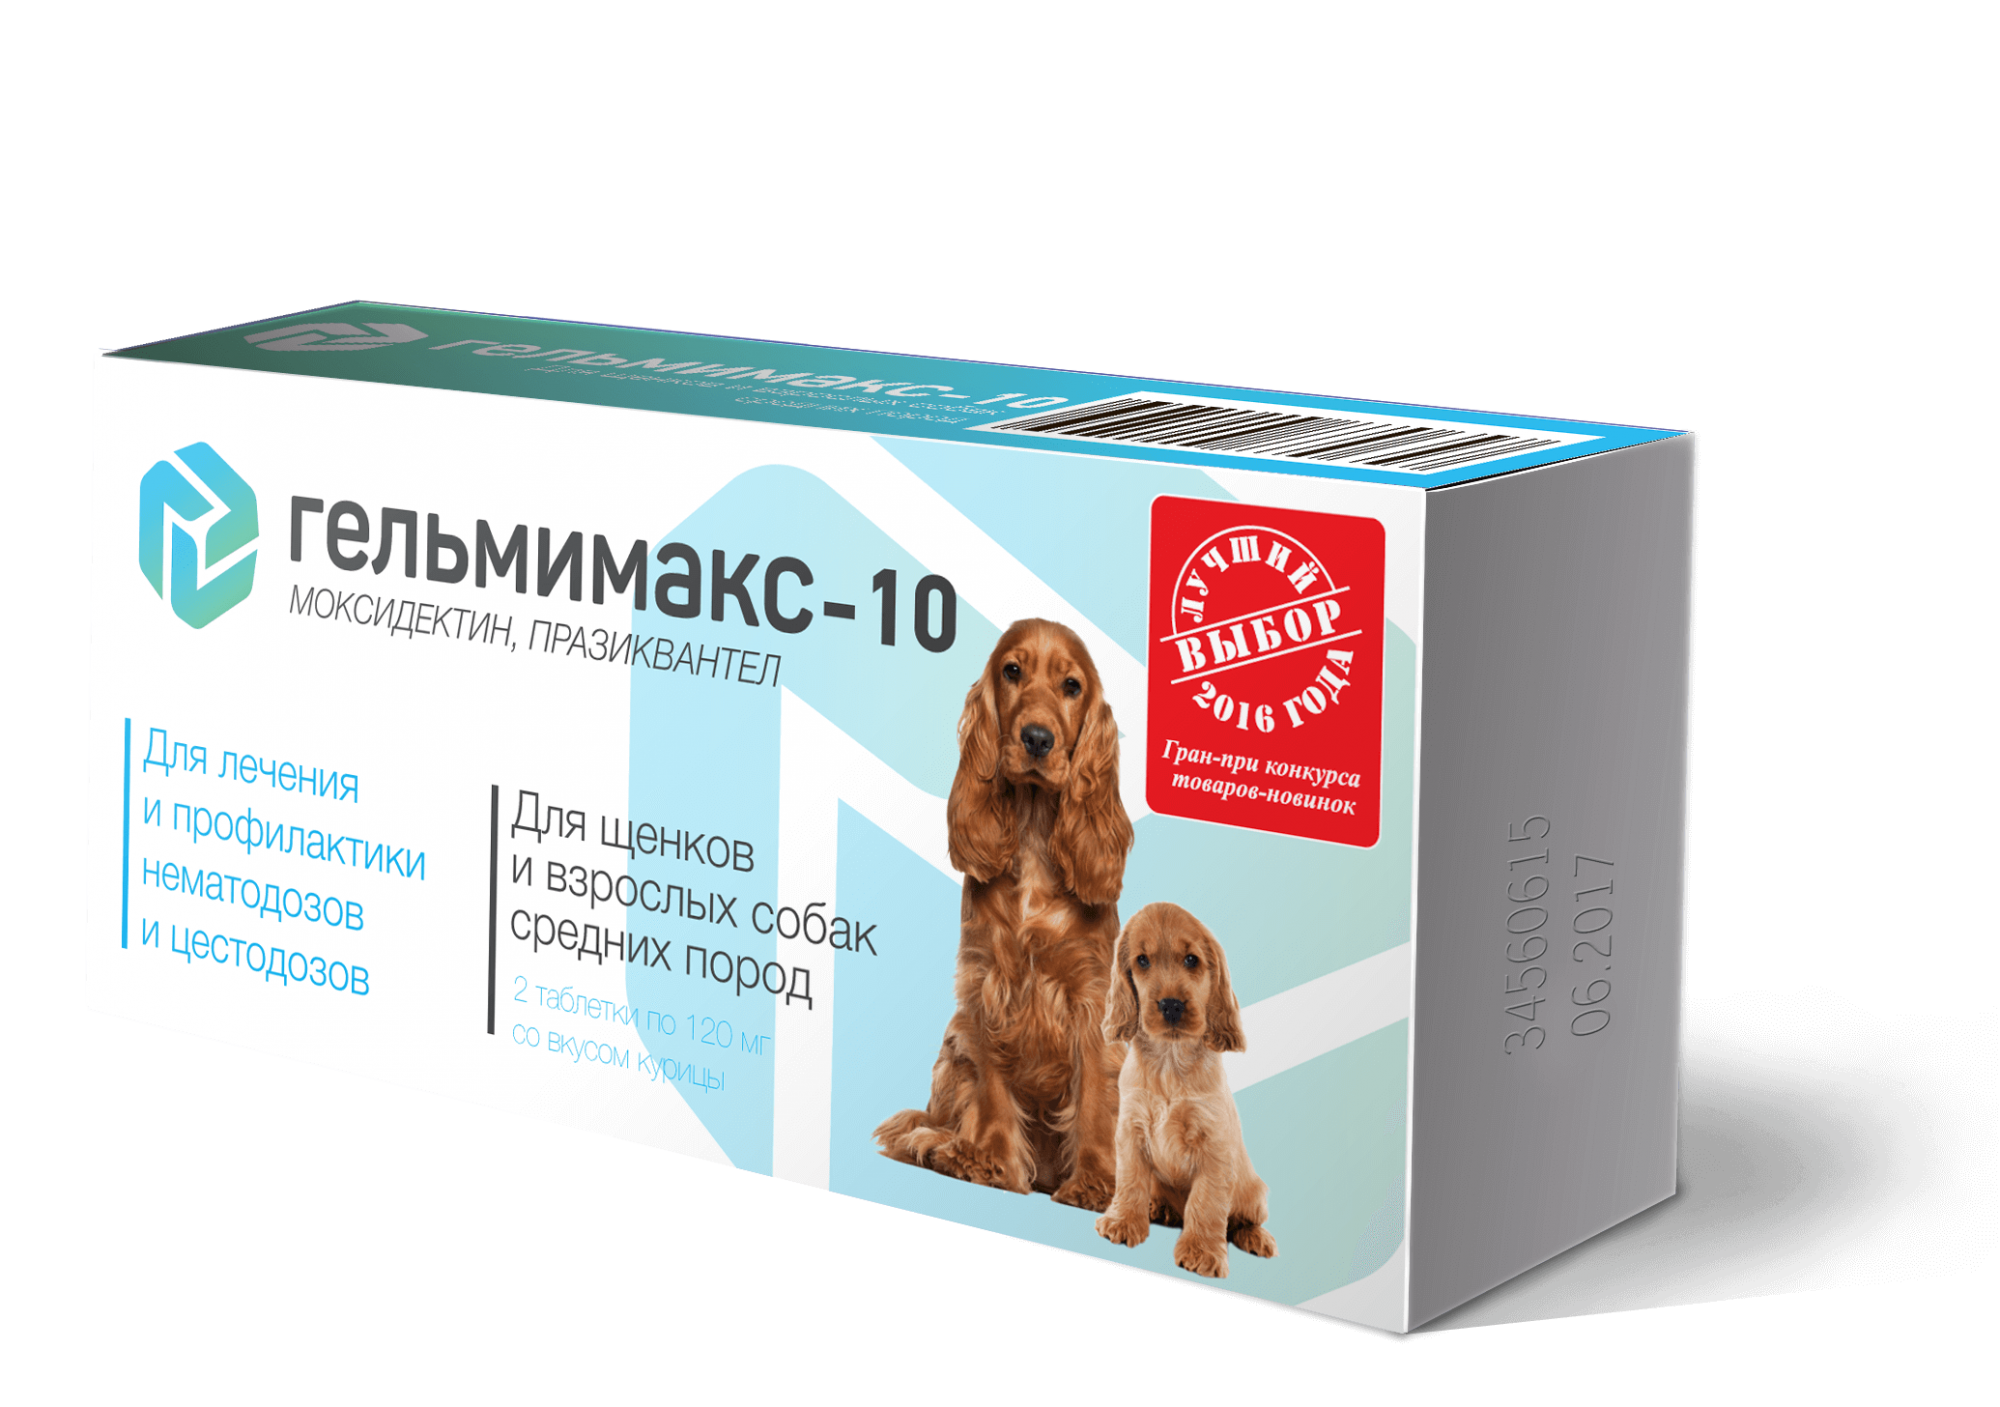 Гельмимакс-10 - Антигельминтик для щенков и собак средних пород